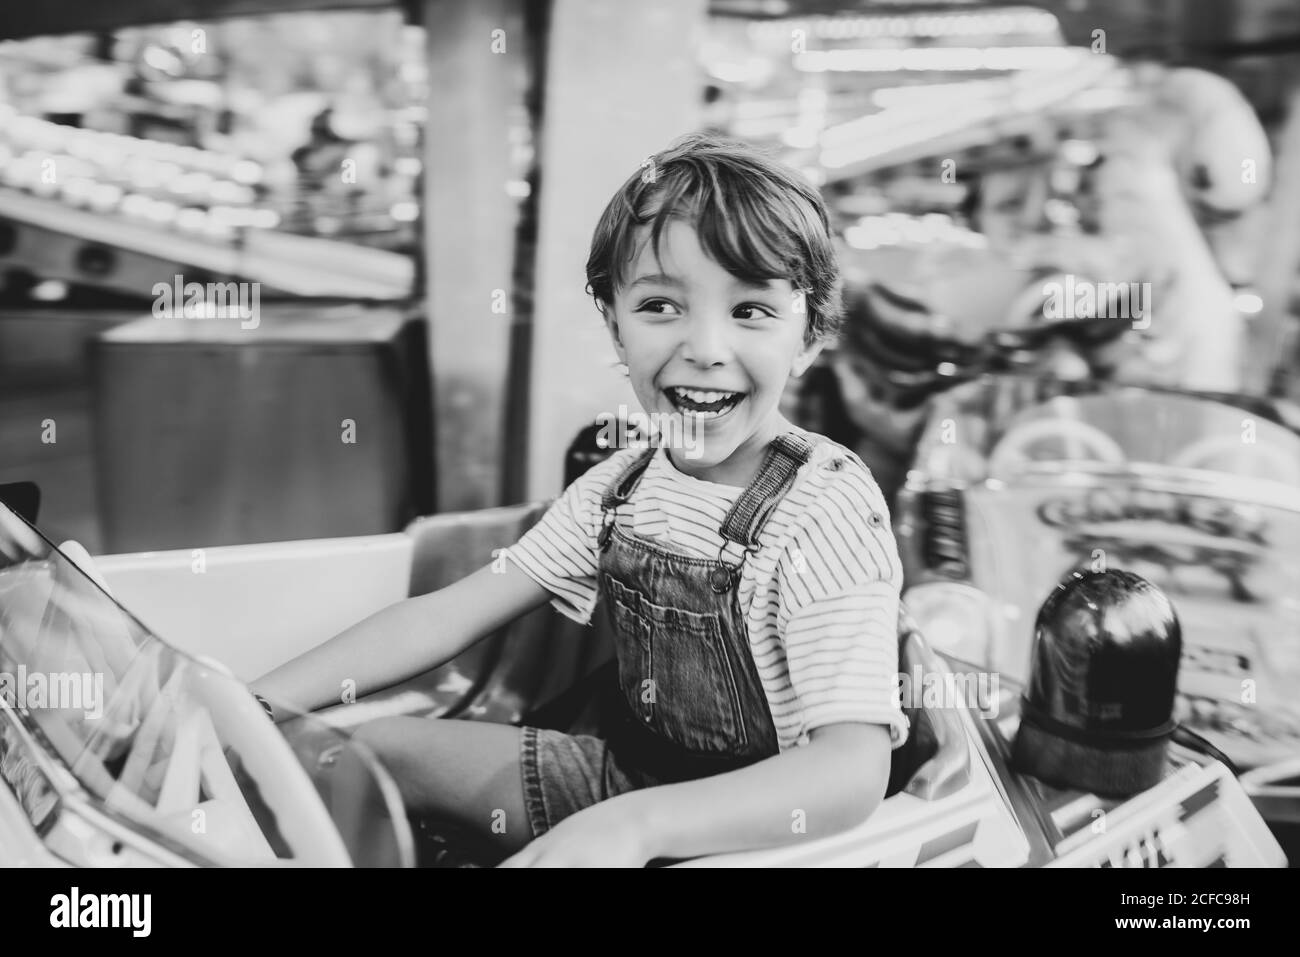 Happy boy riding carousel on fairground Stock Photo